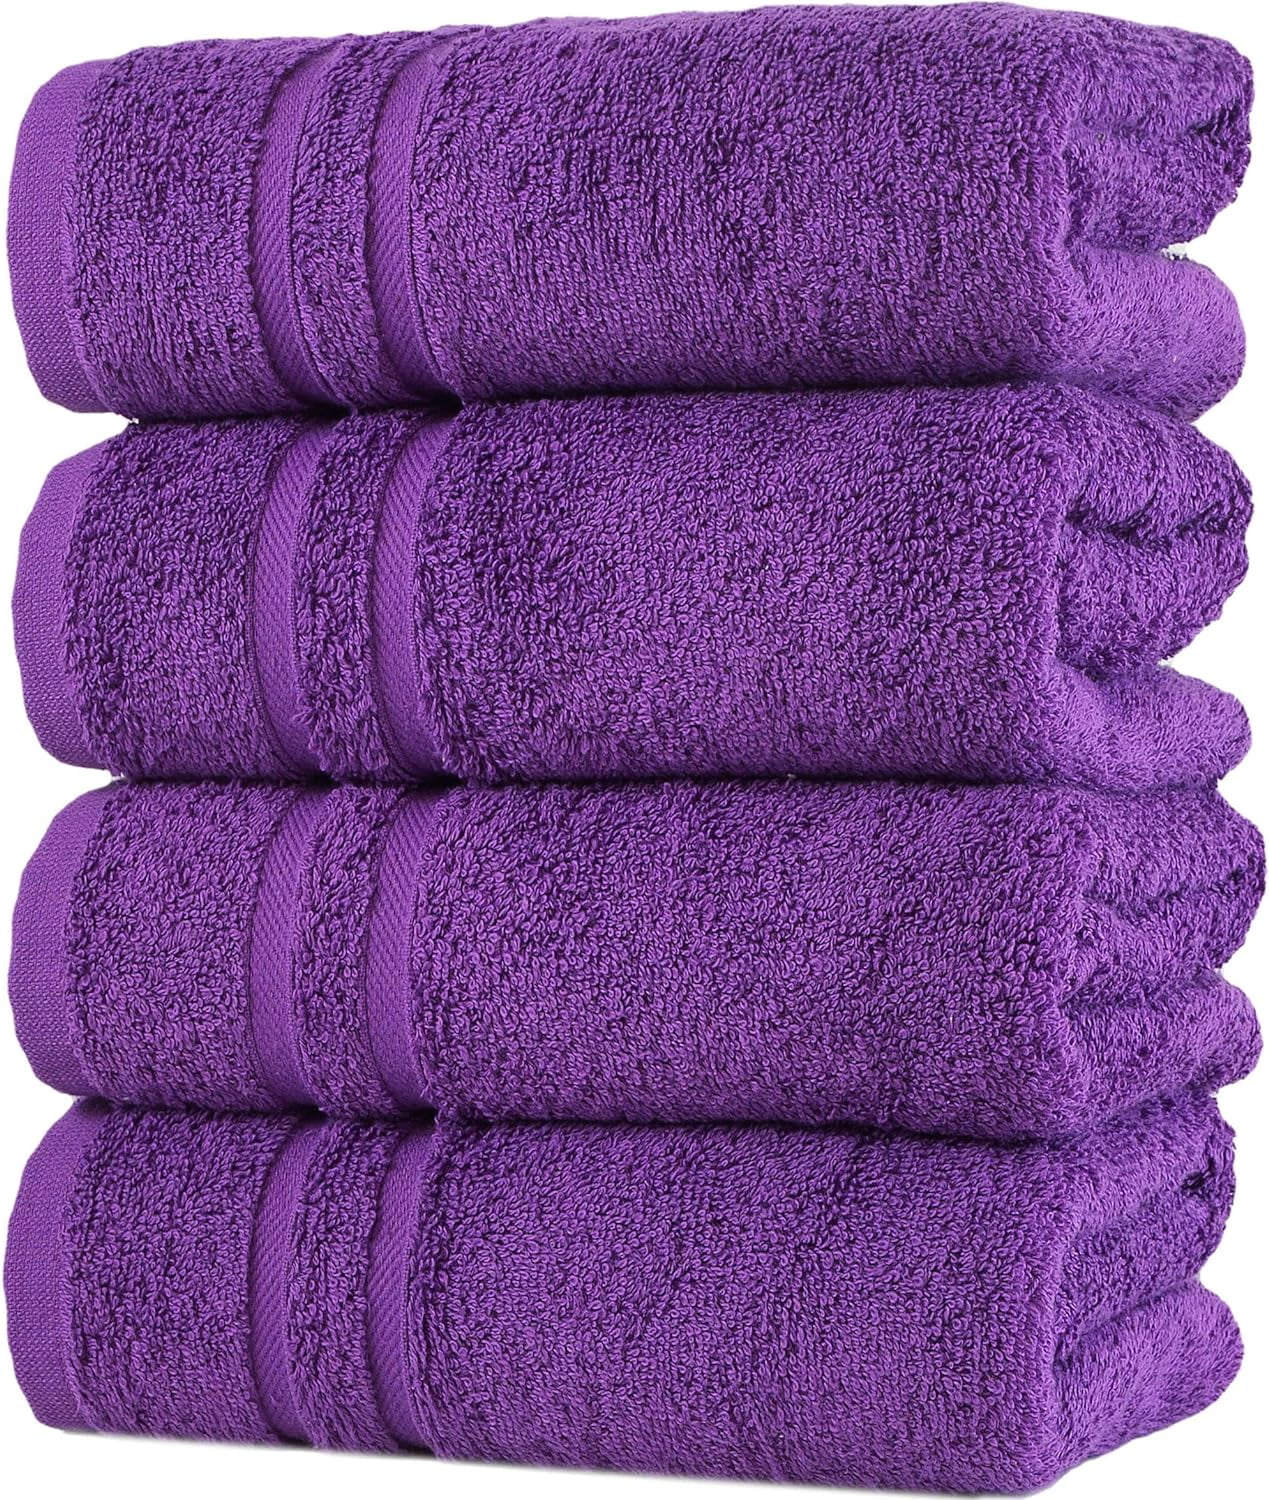 https://i5.walmartimages.com/seo/Hammam-Linen-Purple-Hand-Towels-Set-of-4-Luxury-Cotton-Hand-Towels-for-Bathroom-Soft-Quick-Dry-Towels_b7679ef9-9759-4792-b6b5-f91d8e9b18a4.e1555ad11fb840965219a9a61fddfd83.jpeg